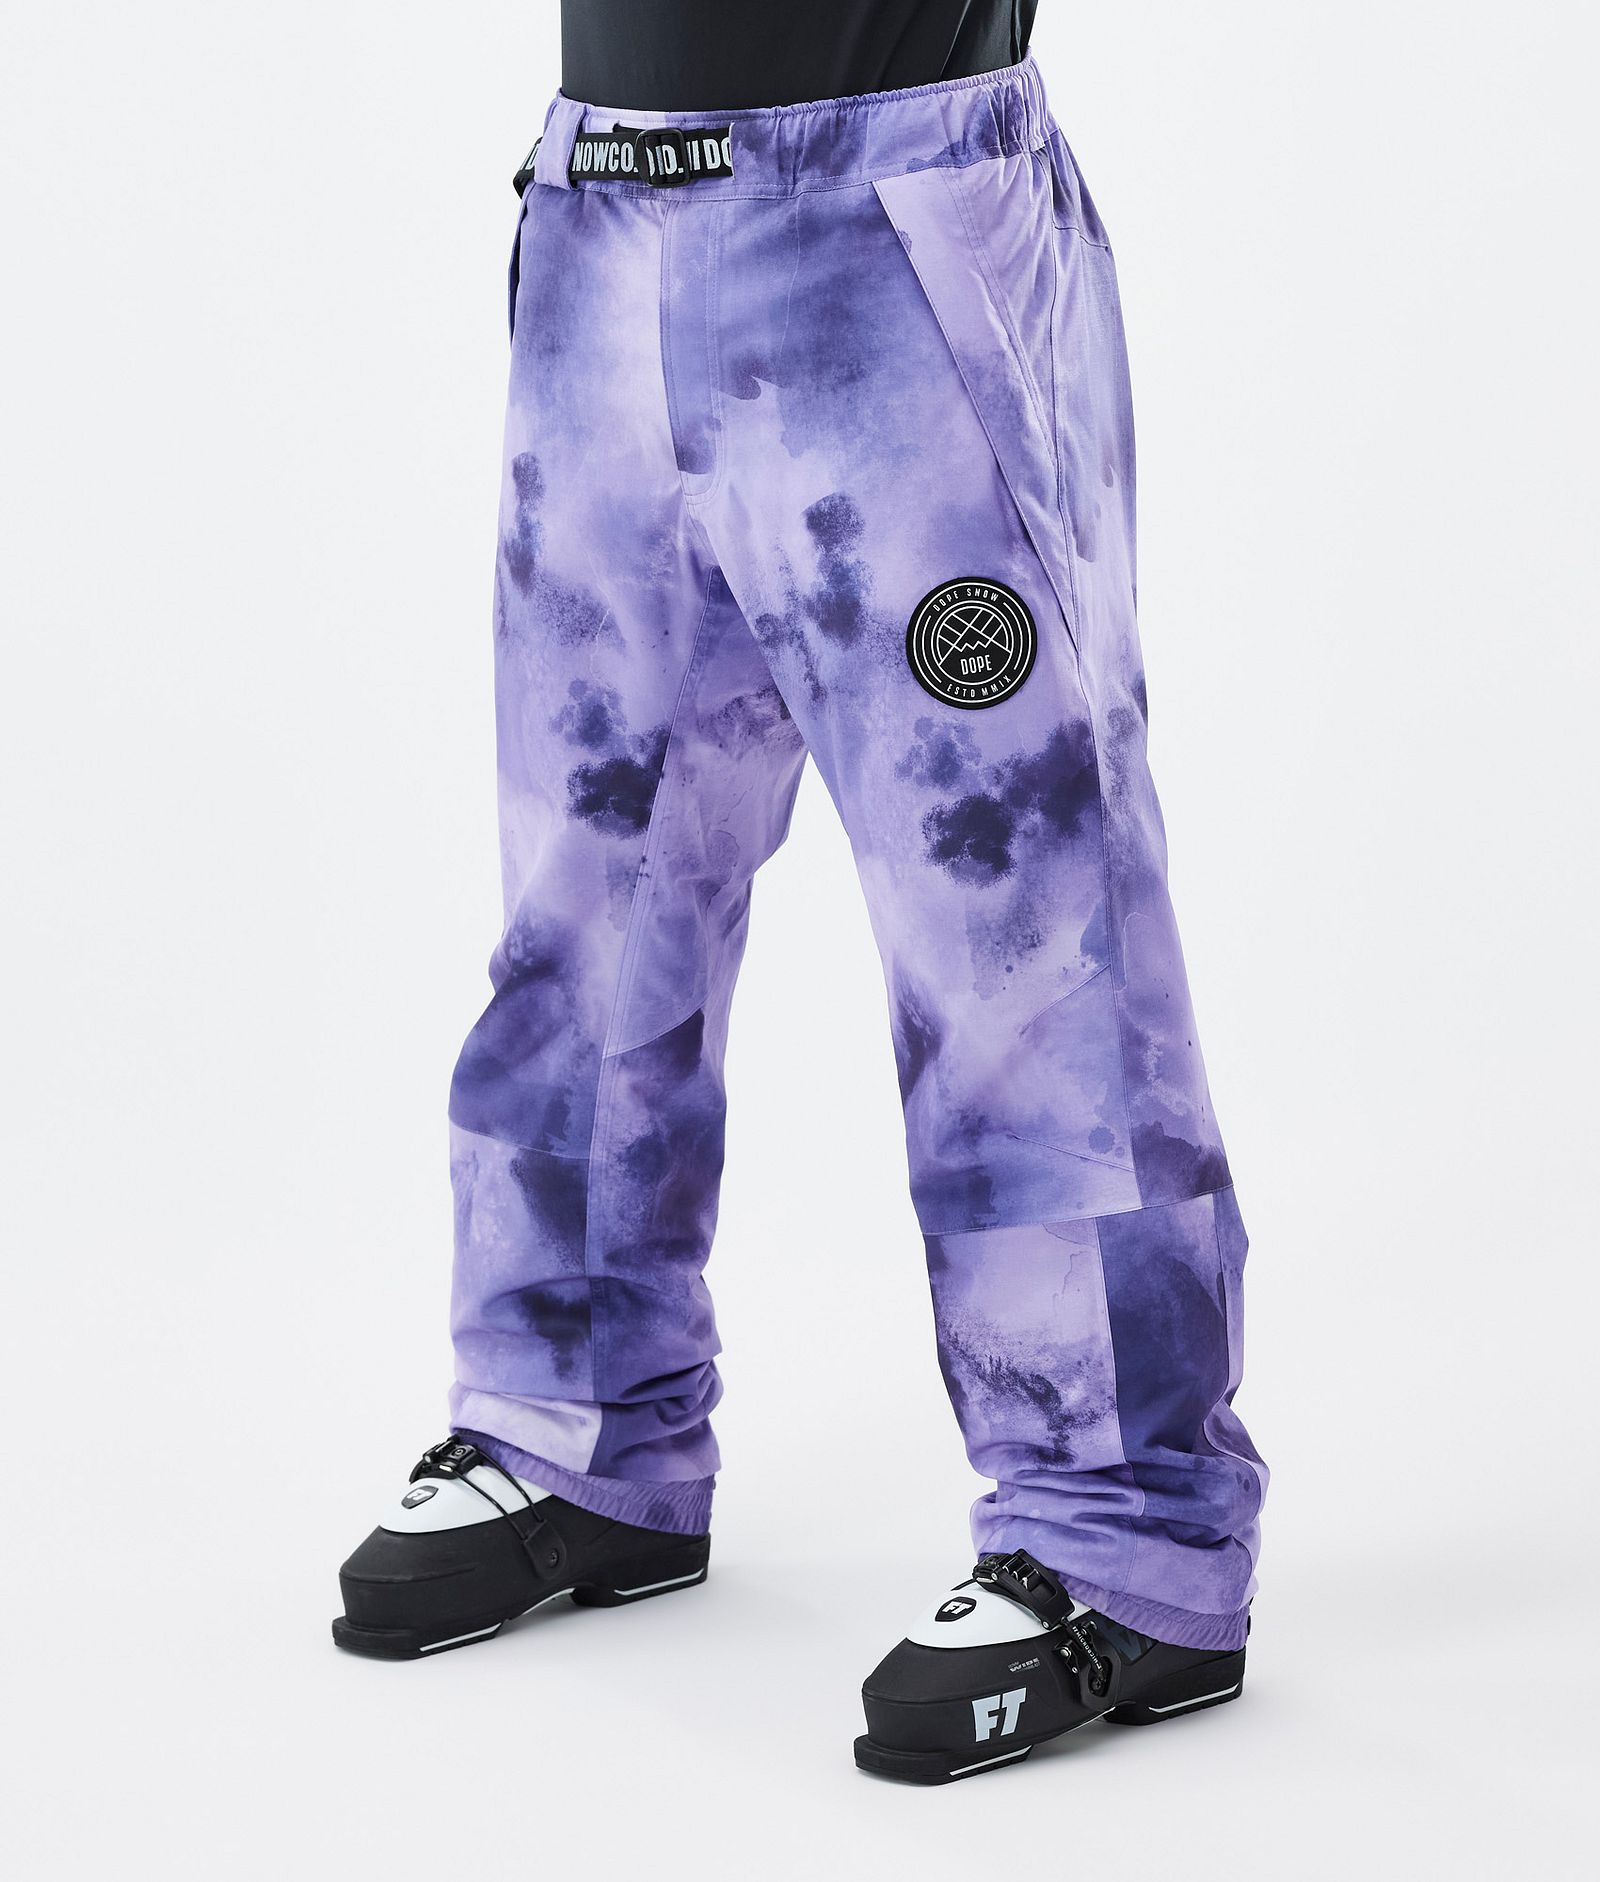 Blizzard Pantalon de Ski Homme Liquid Violet, Image 1 sur 5